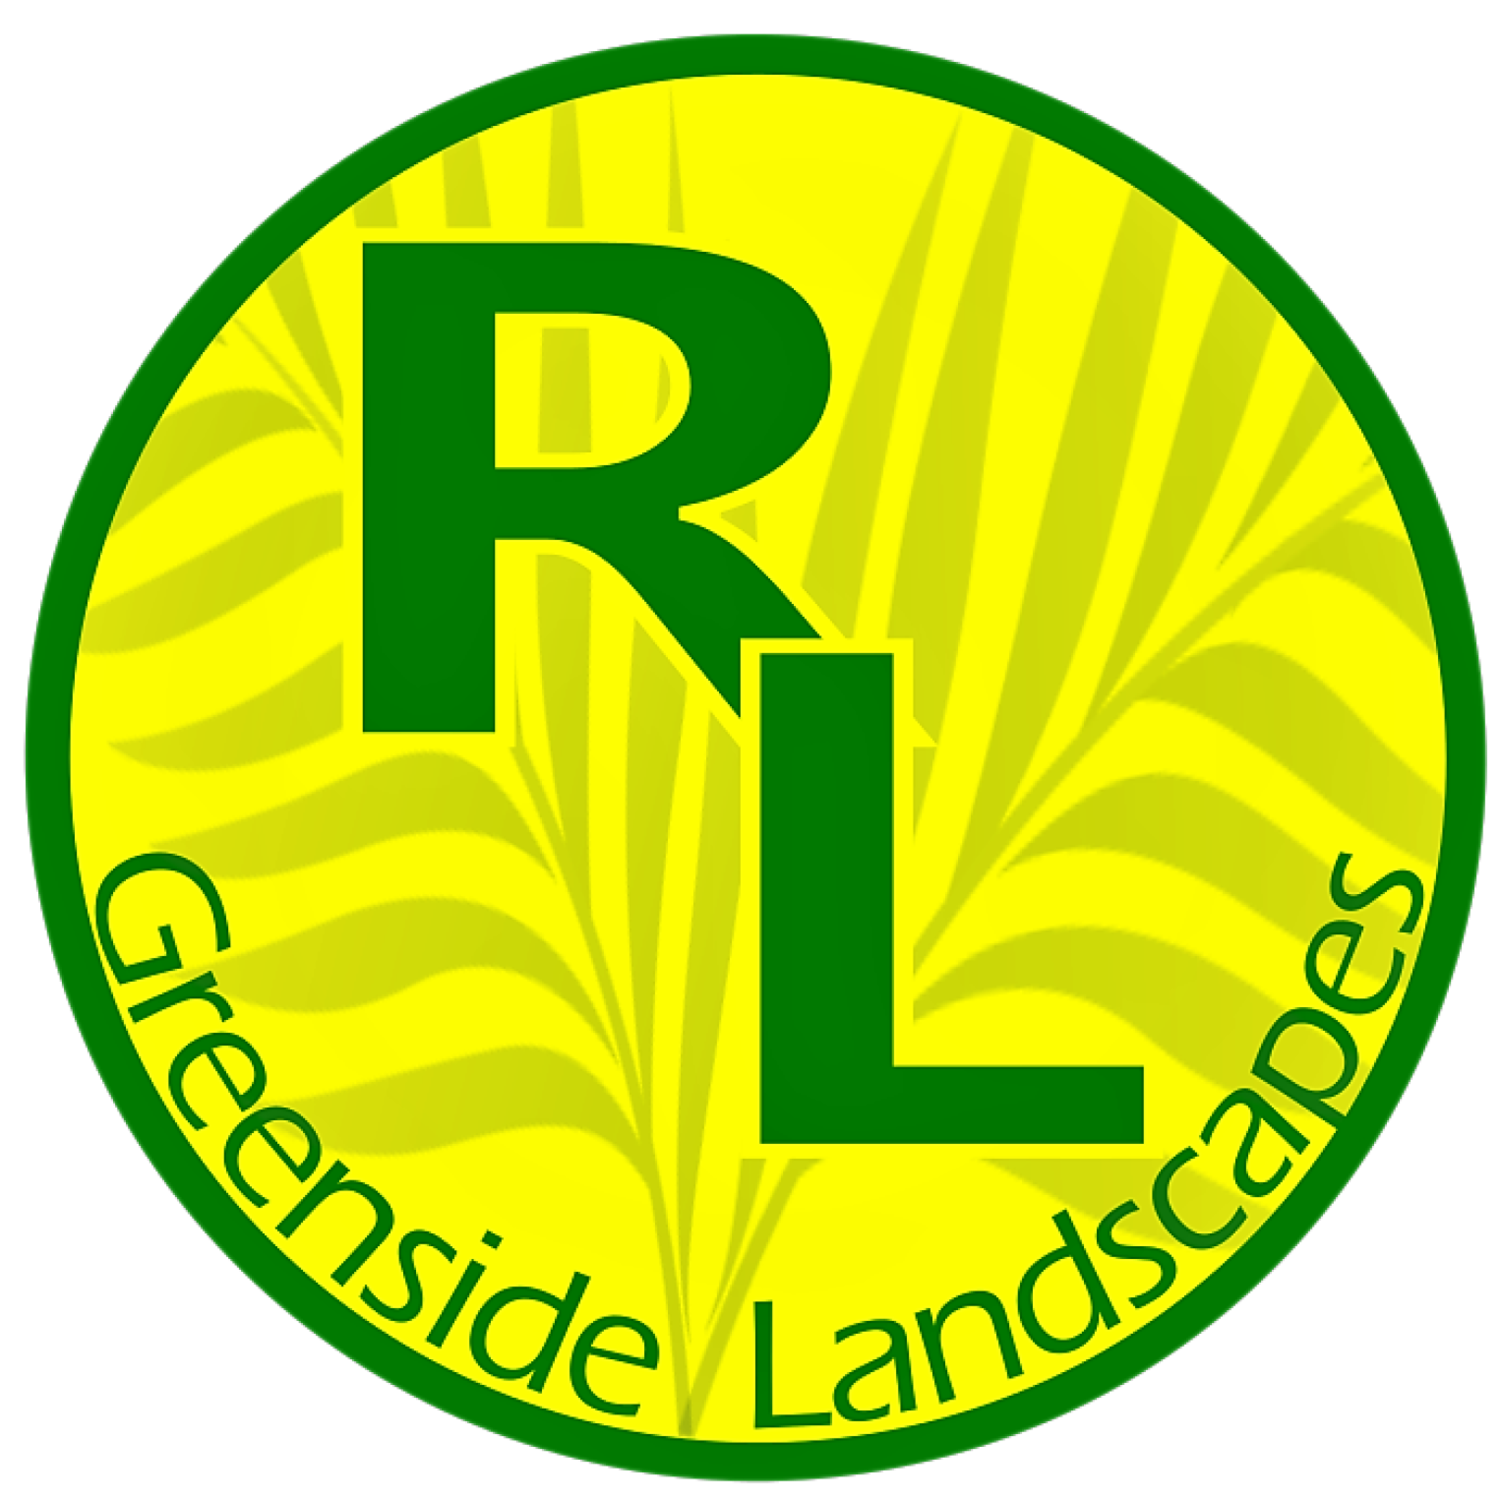 Robert Langrish Greenside Landscapes